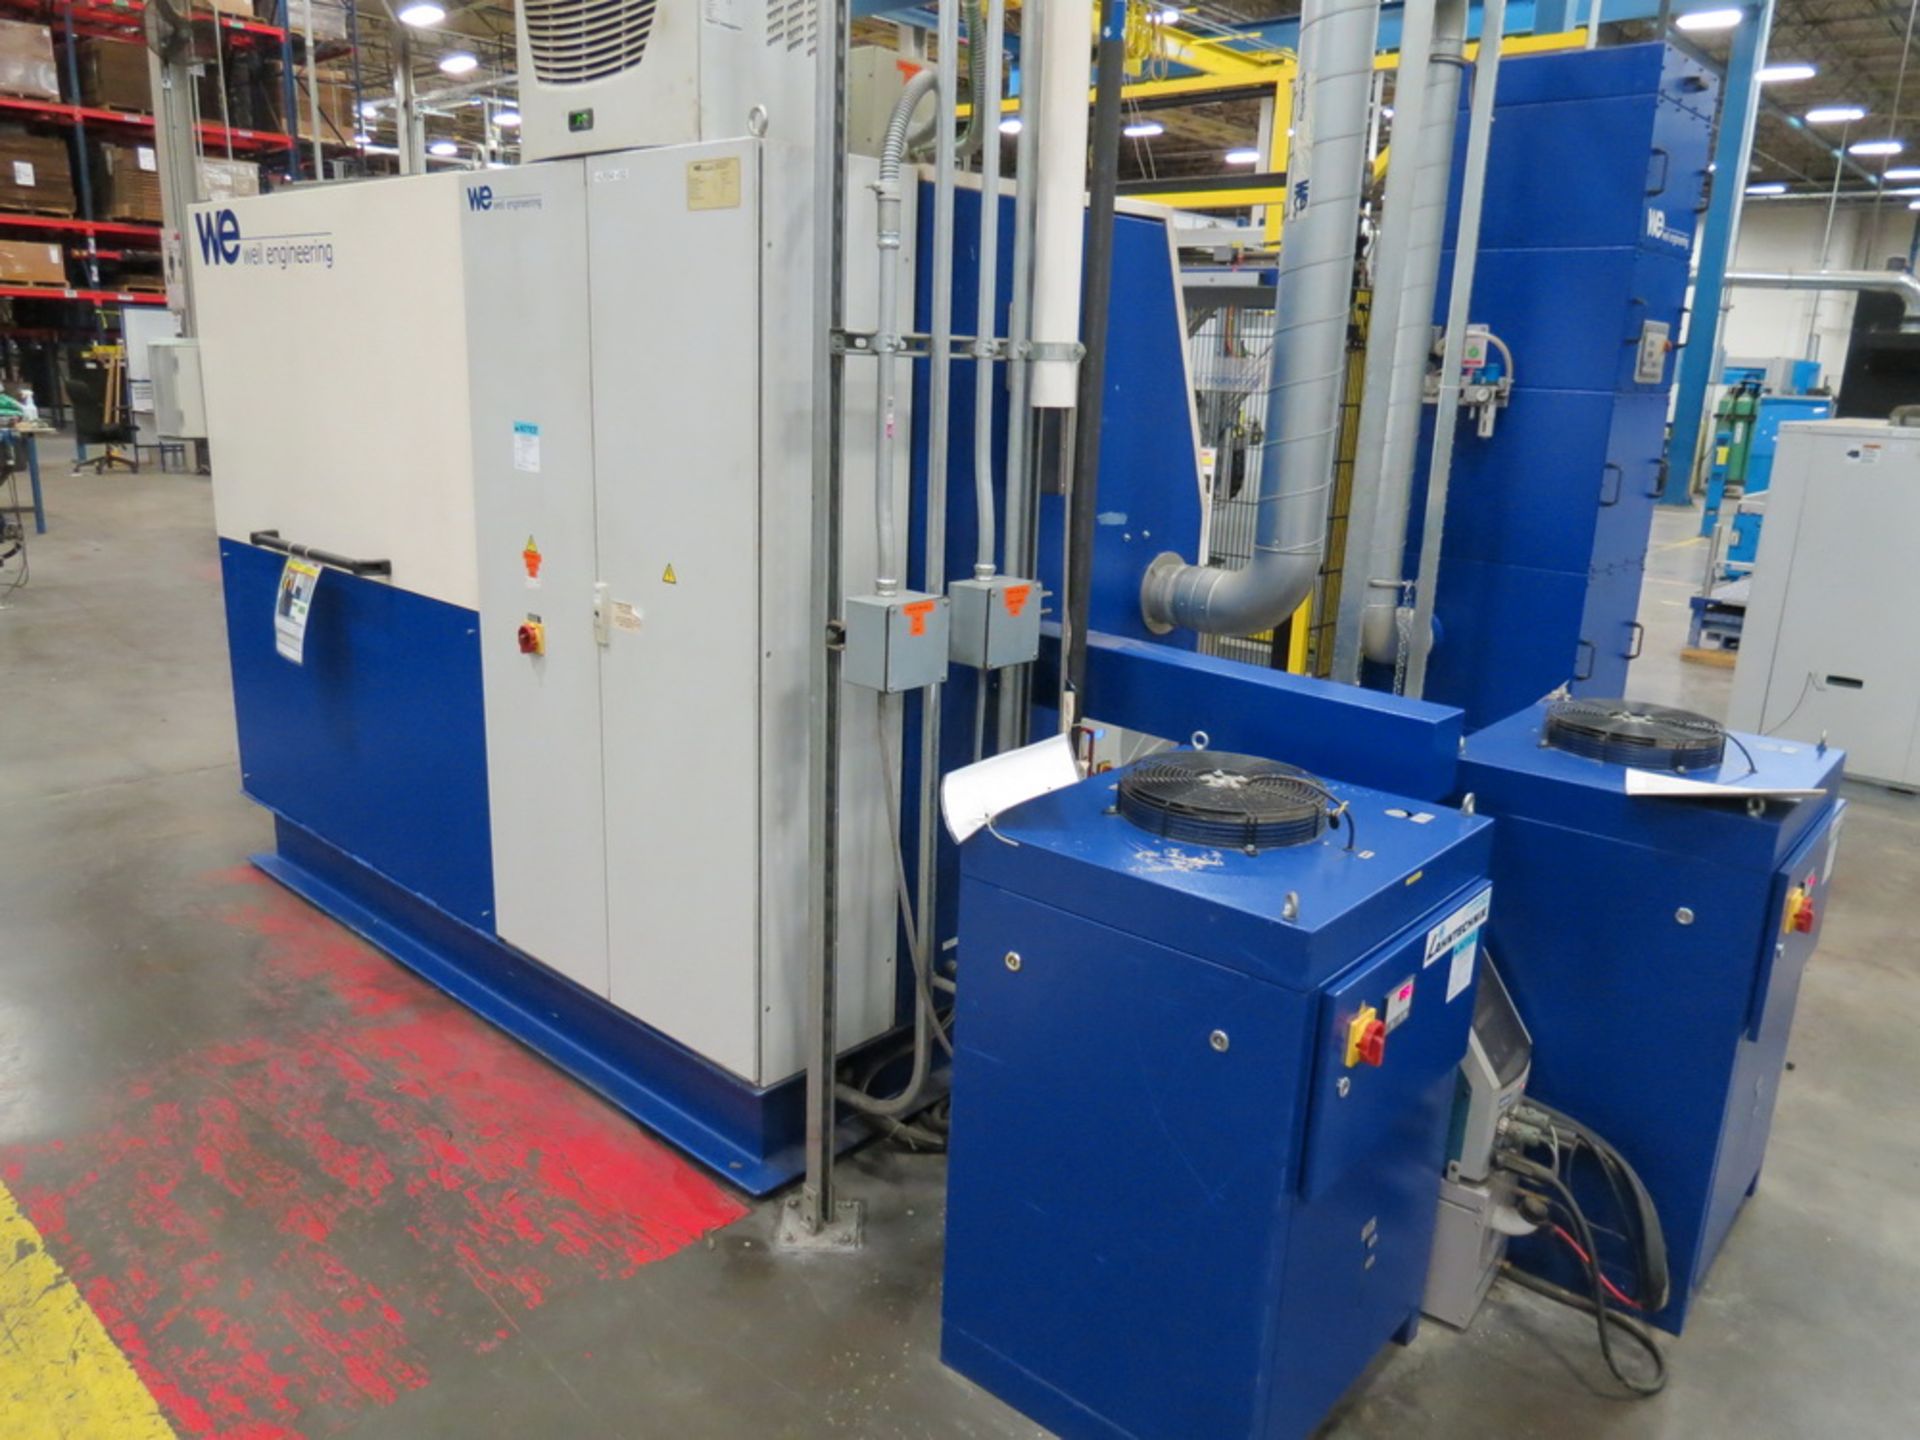 2014 Weil Technology Flexmaster 400/1250 Seam Welding Machine - Image 15 of 20